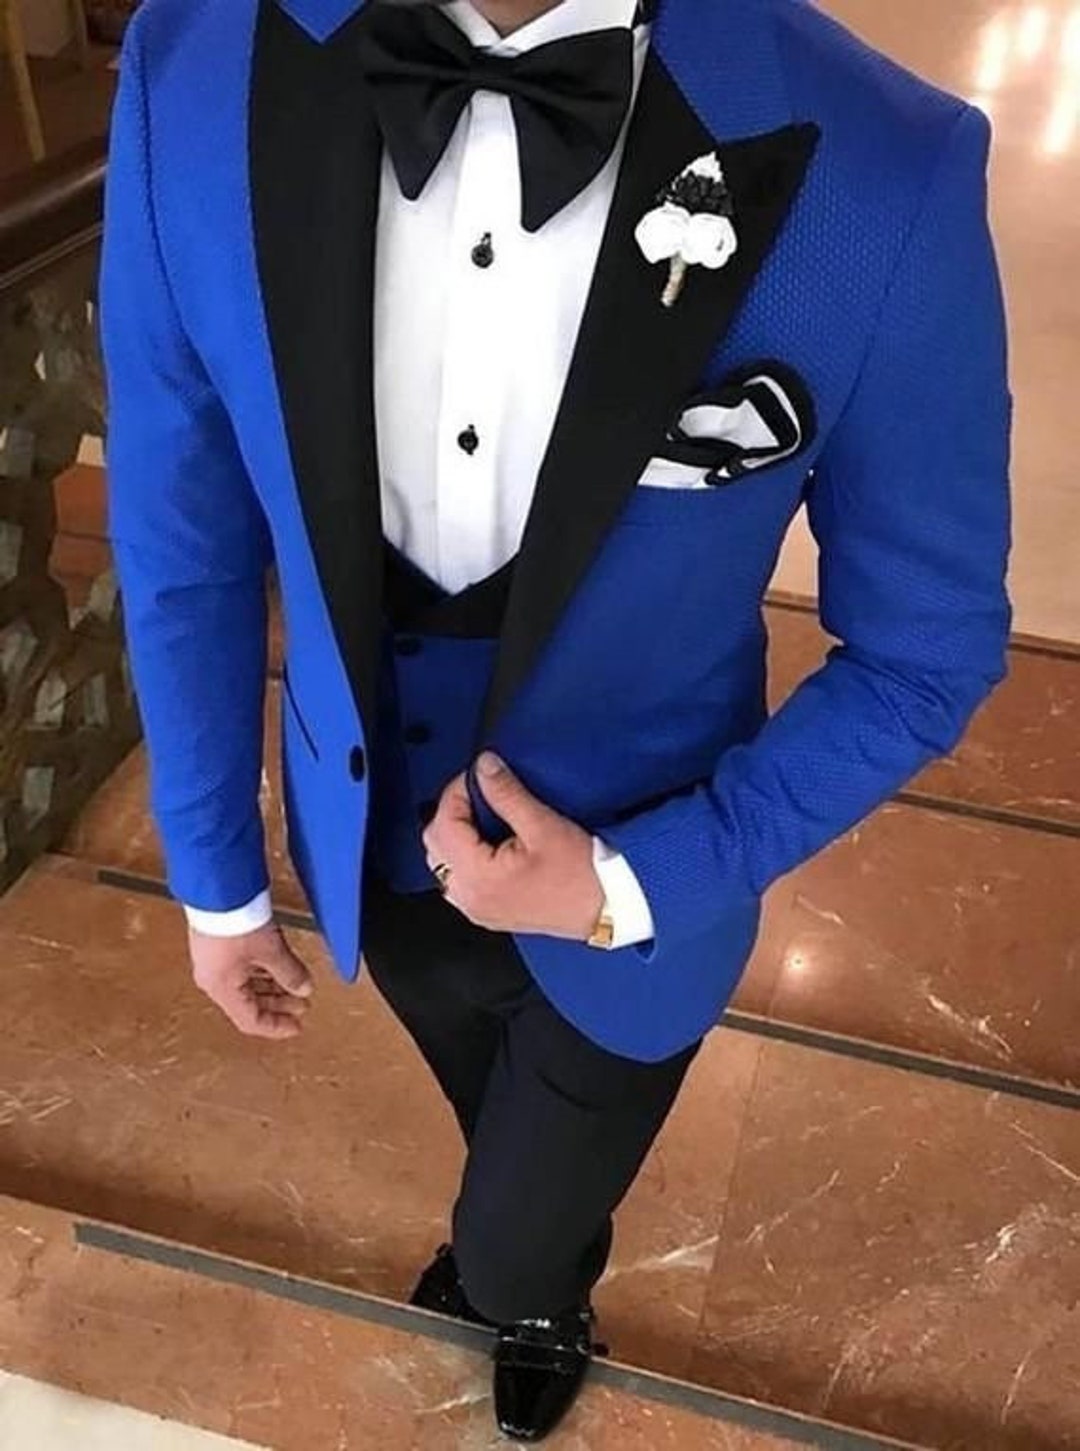 Mens Wedding Suit - Groom Suit - Royal Blue Suit